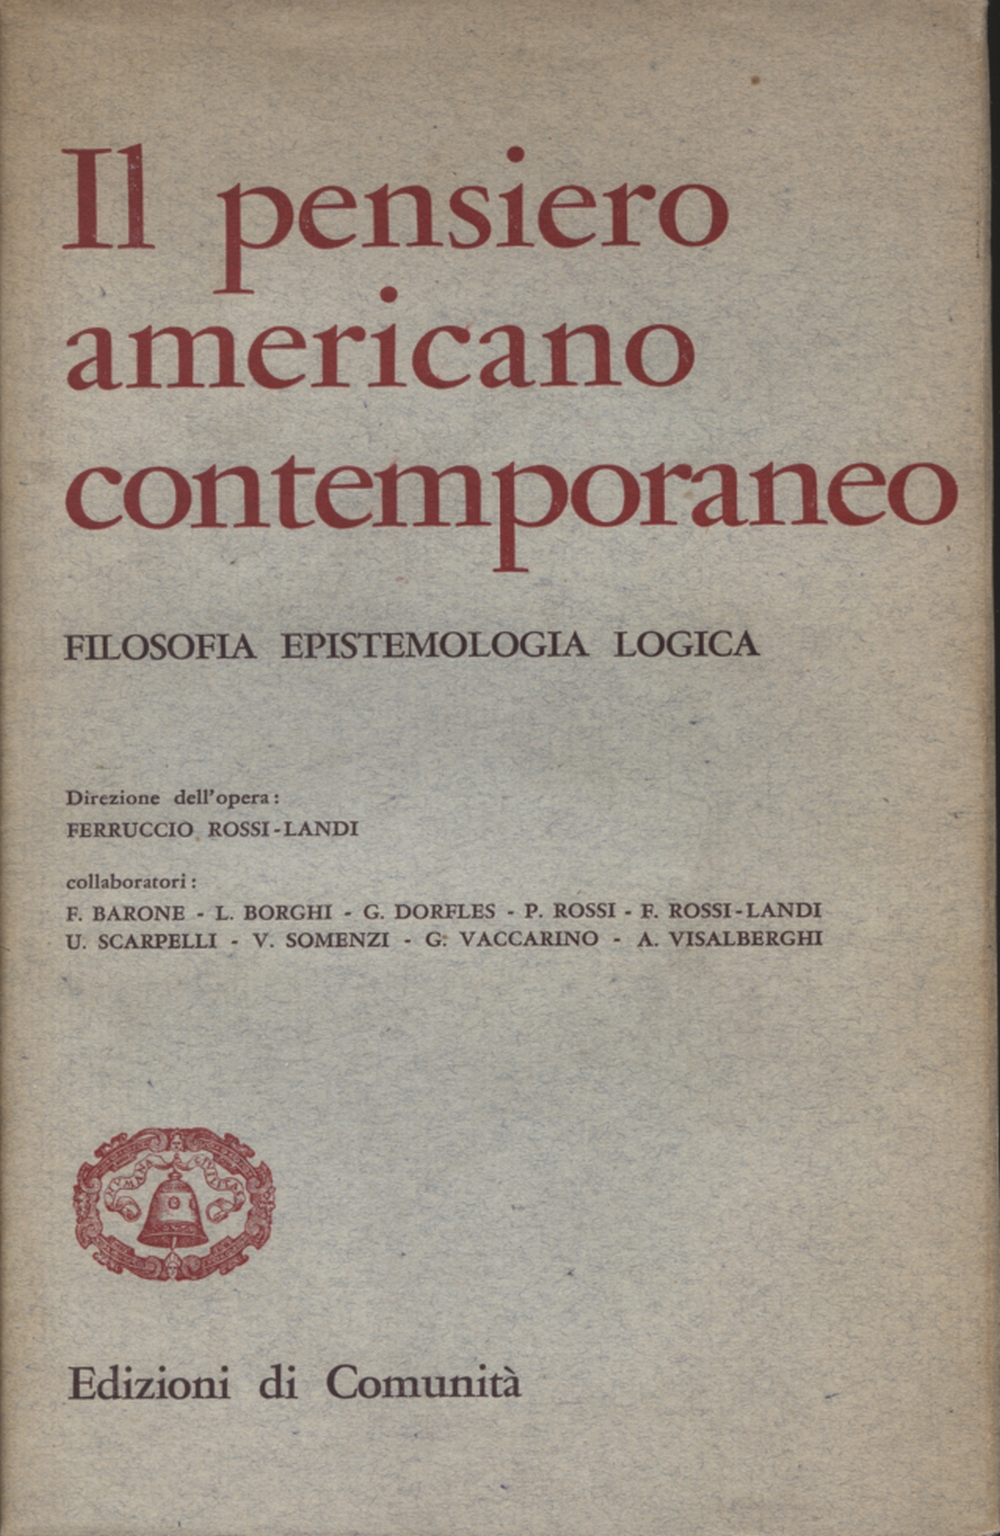 Il pensiero americano contemporaneo, Ferruccio Rossi-Landi